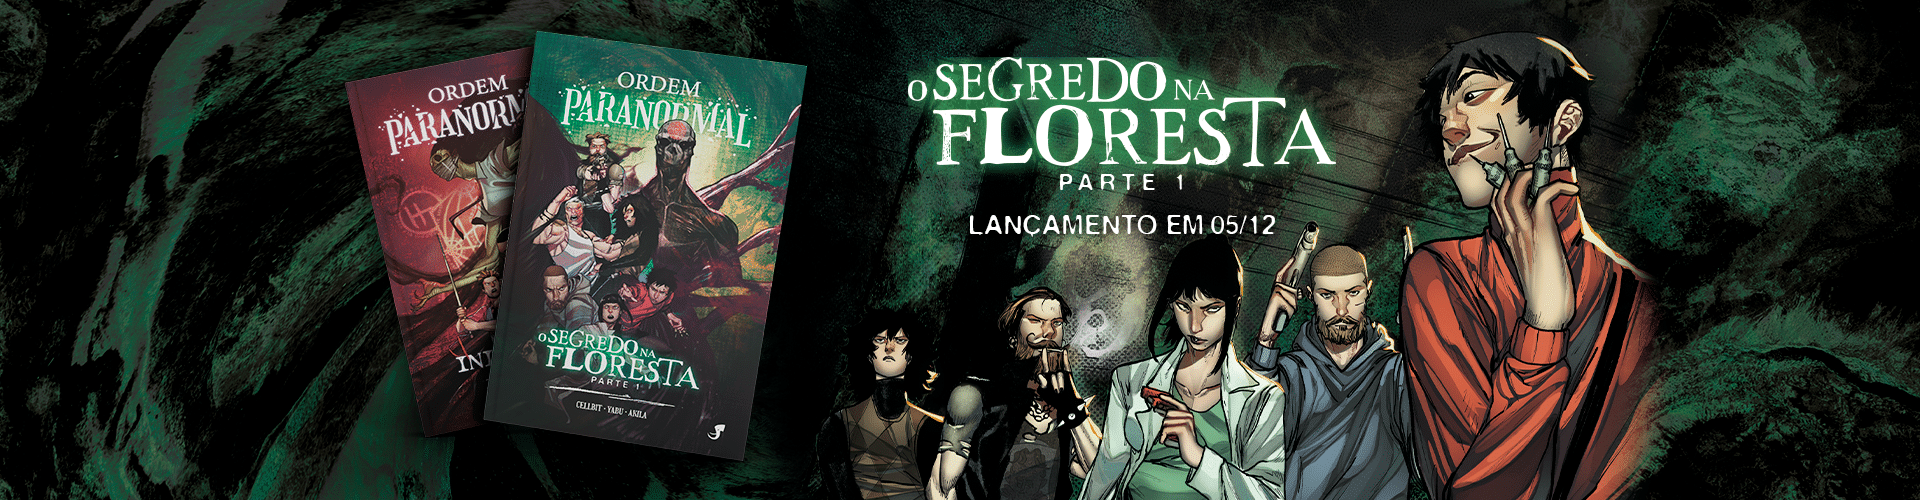 Jambô Editora - Página 6 de 48 - A maior editora de RPG do Brasil!